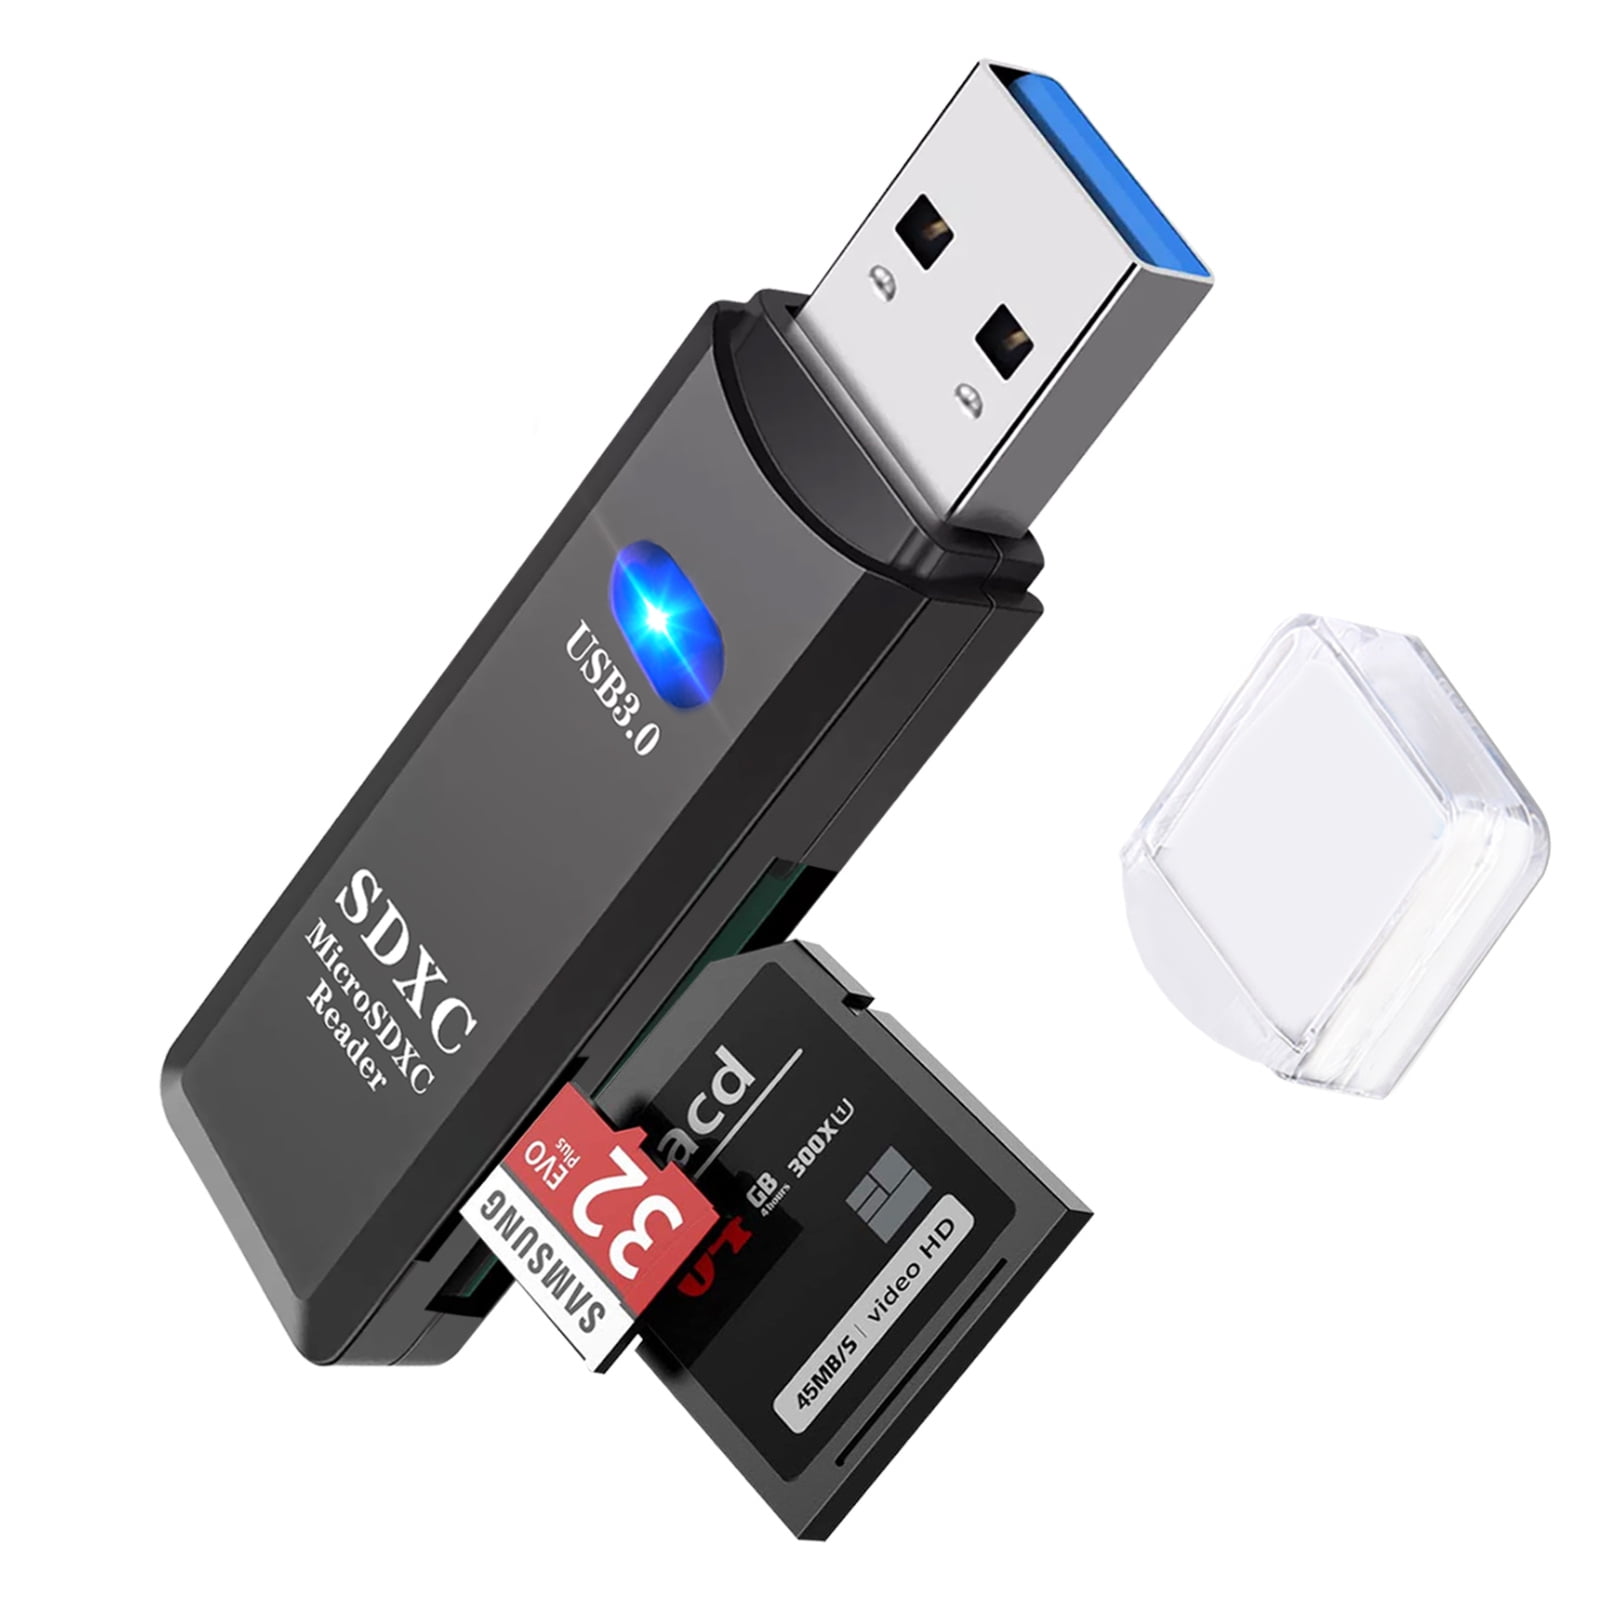 TSV USB 3.0 Portable Card Reader for SD, SDHC, SDXC, MicroSD